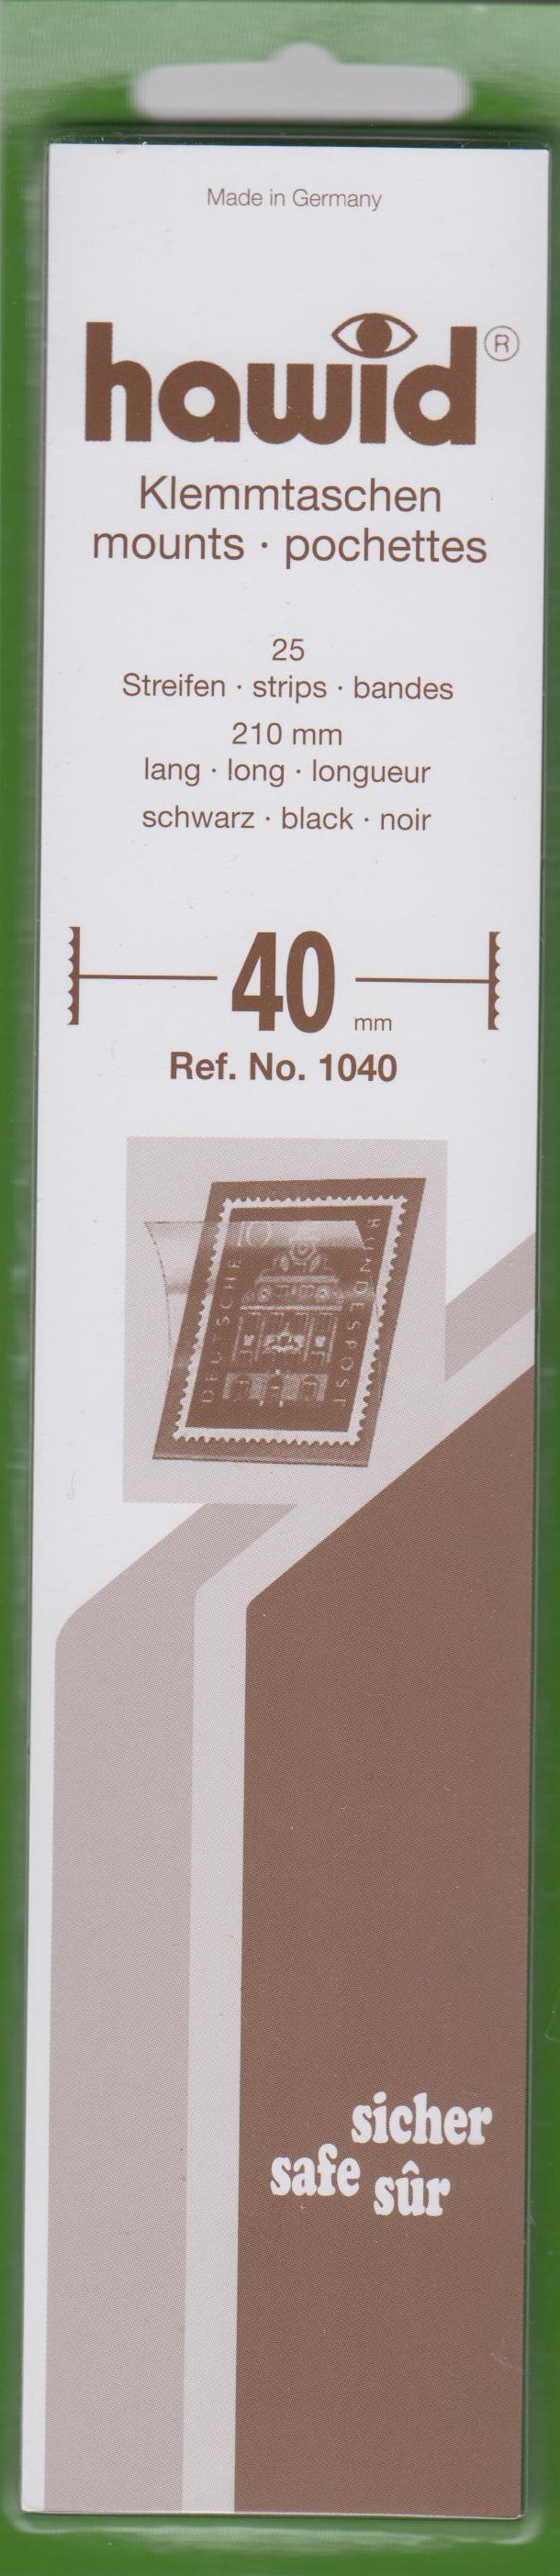 Hawid Klemmtaschen Nr. 1041, 25 Streifen 210 x 40 mm, schwarz